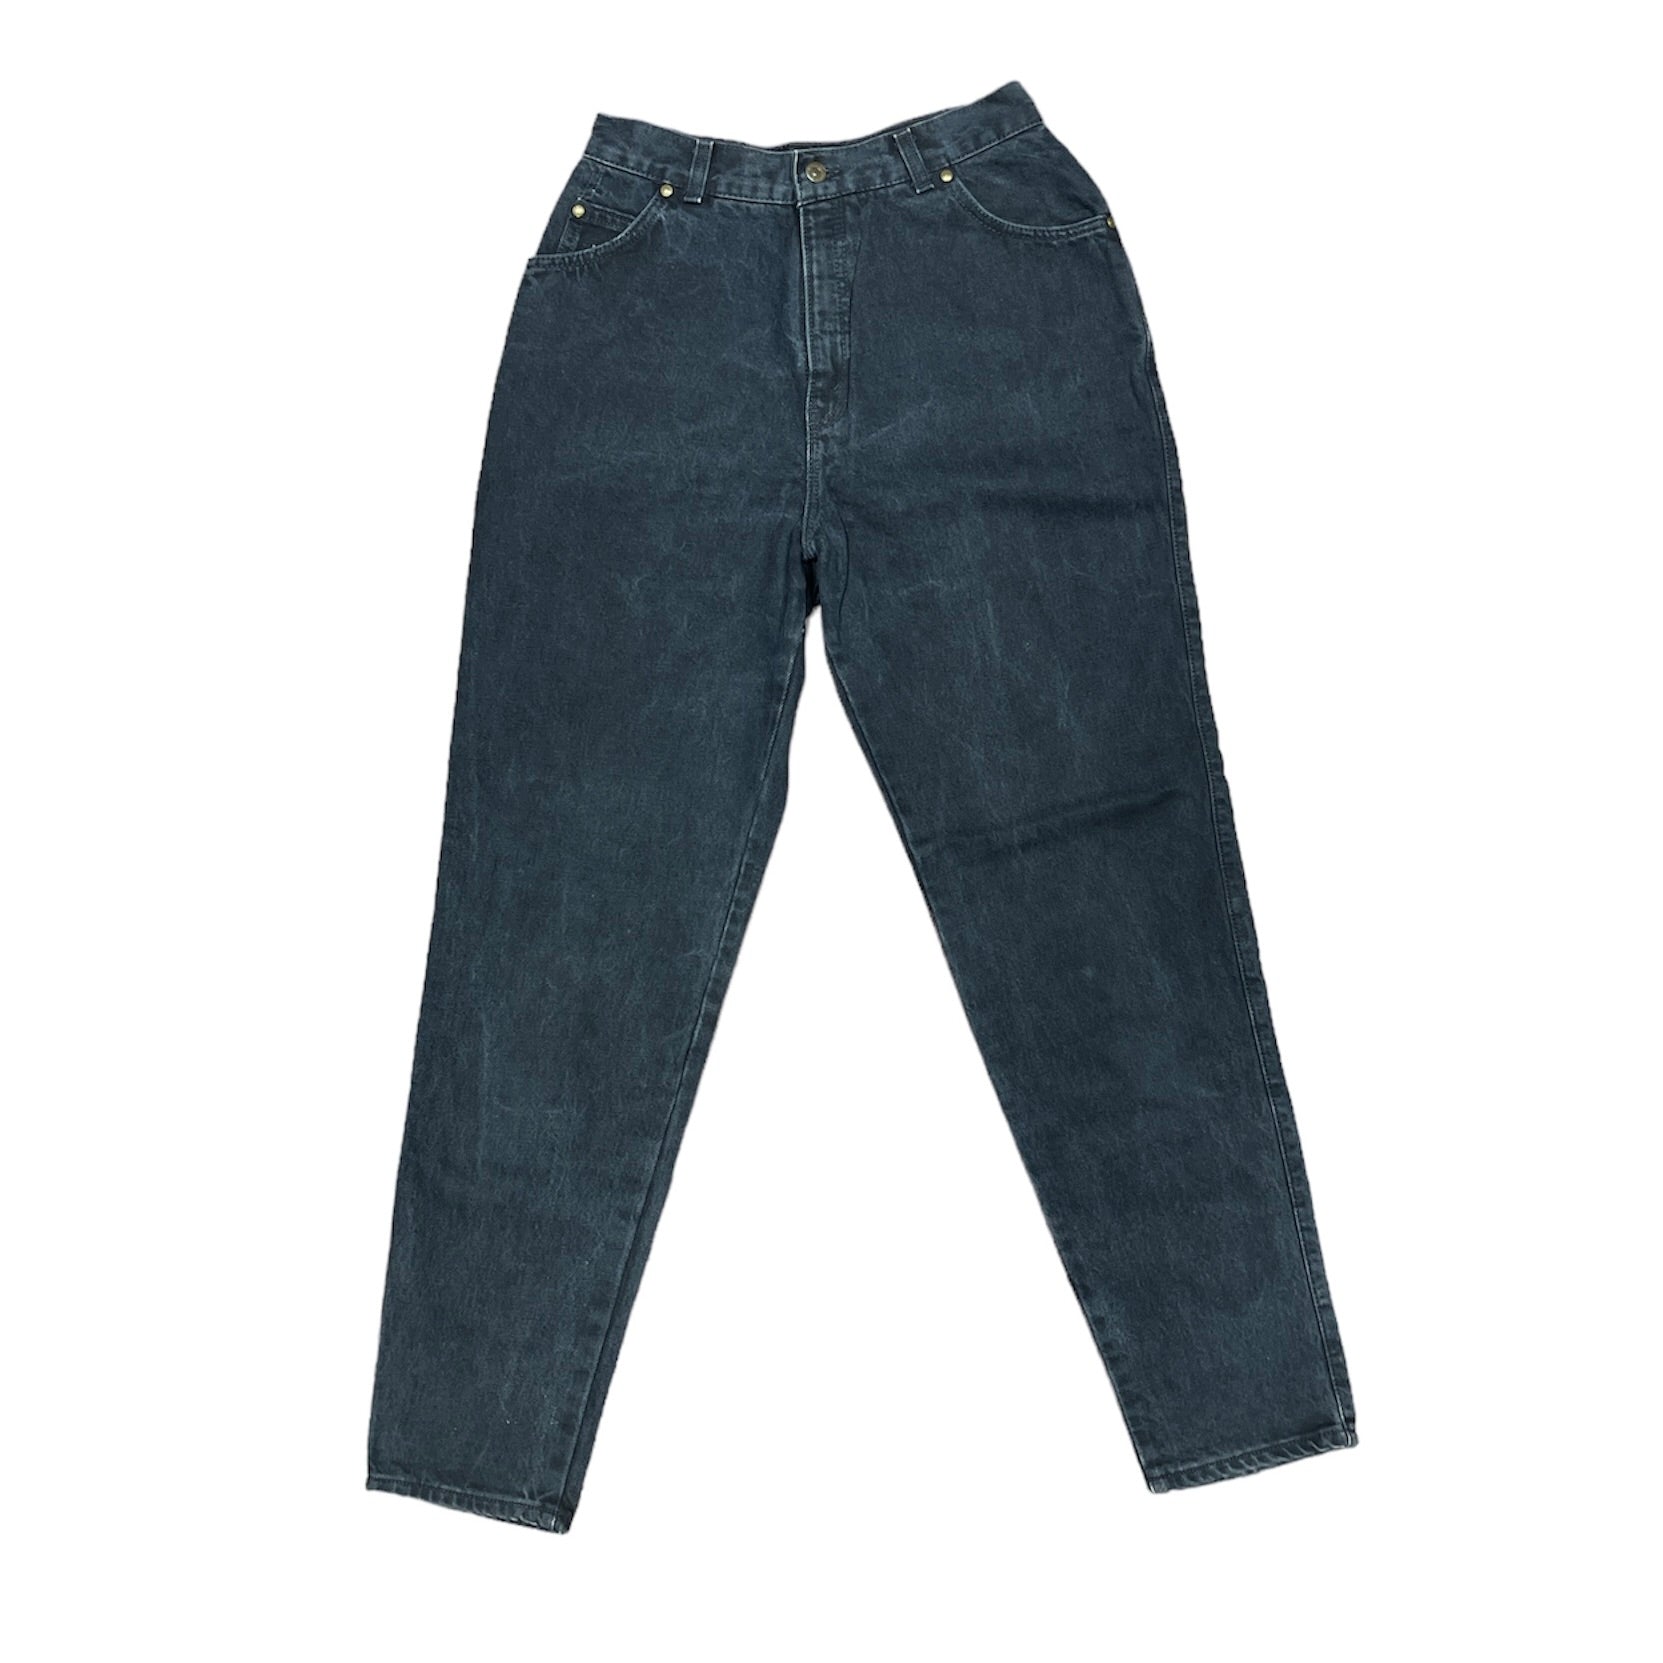 Vintage Levis Black Jeans (W29)